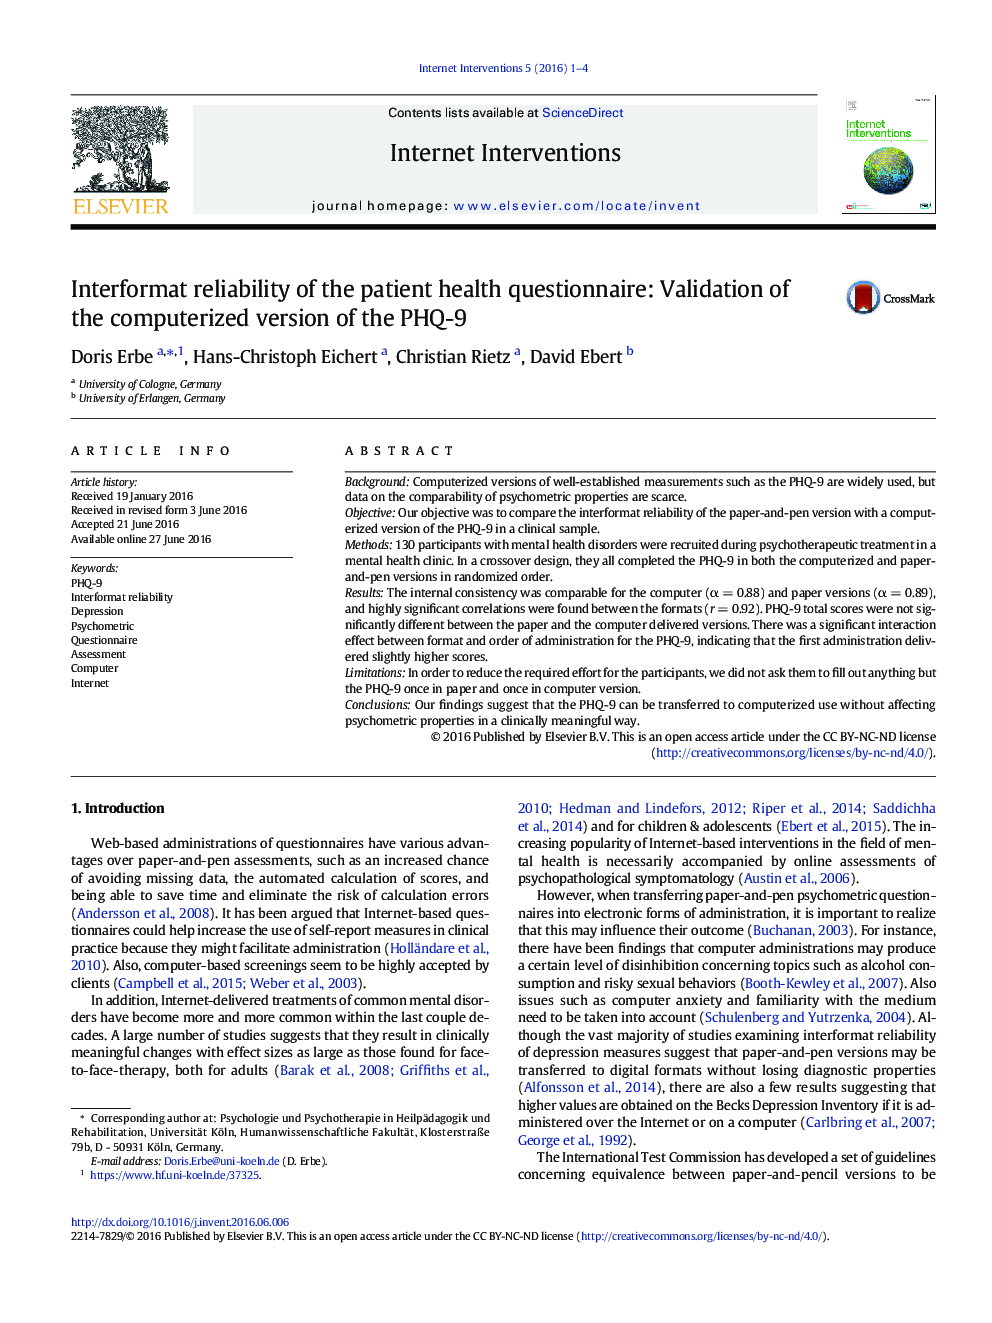 قابلیت اطمینان اینترفرم از پرسشنامه سلامت بیمار: تایید نسخه کامپیوتری PHQ-9